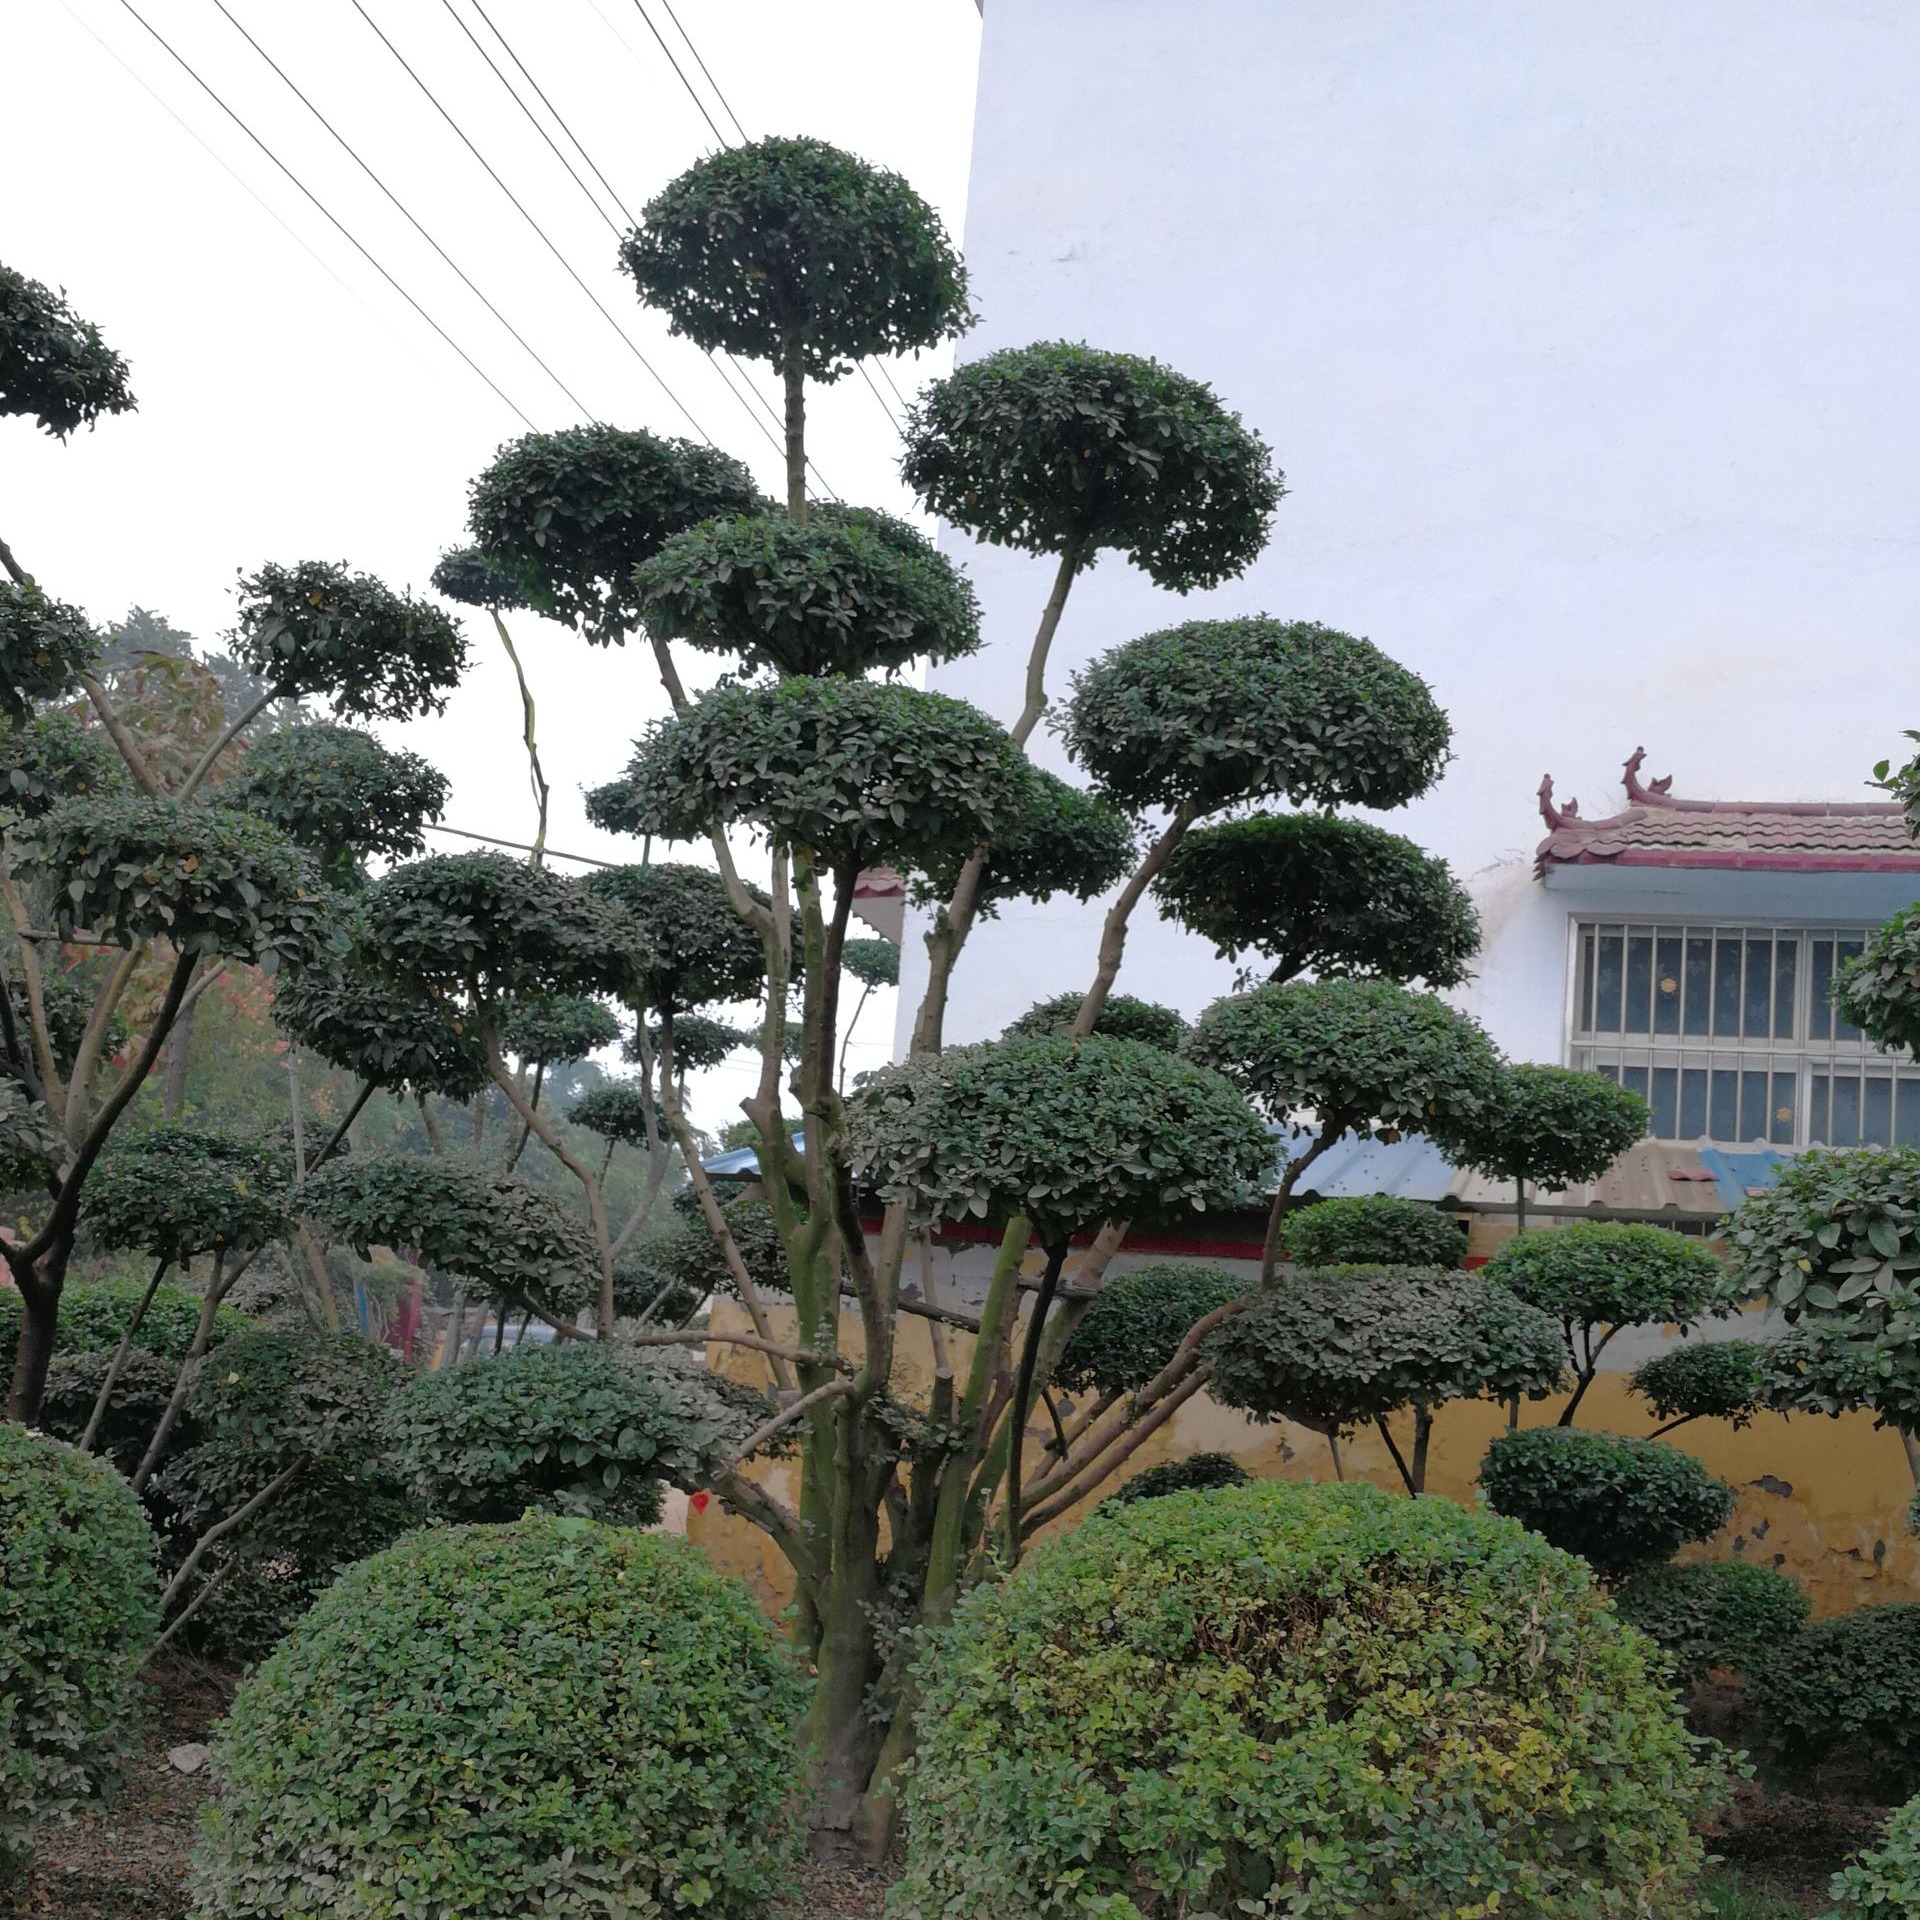 鄢陵县梦宇花木园的2米高小叶女贞造型树属于艺术品